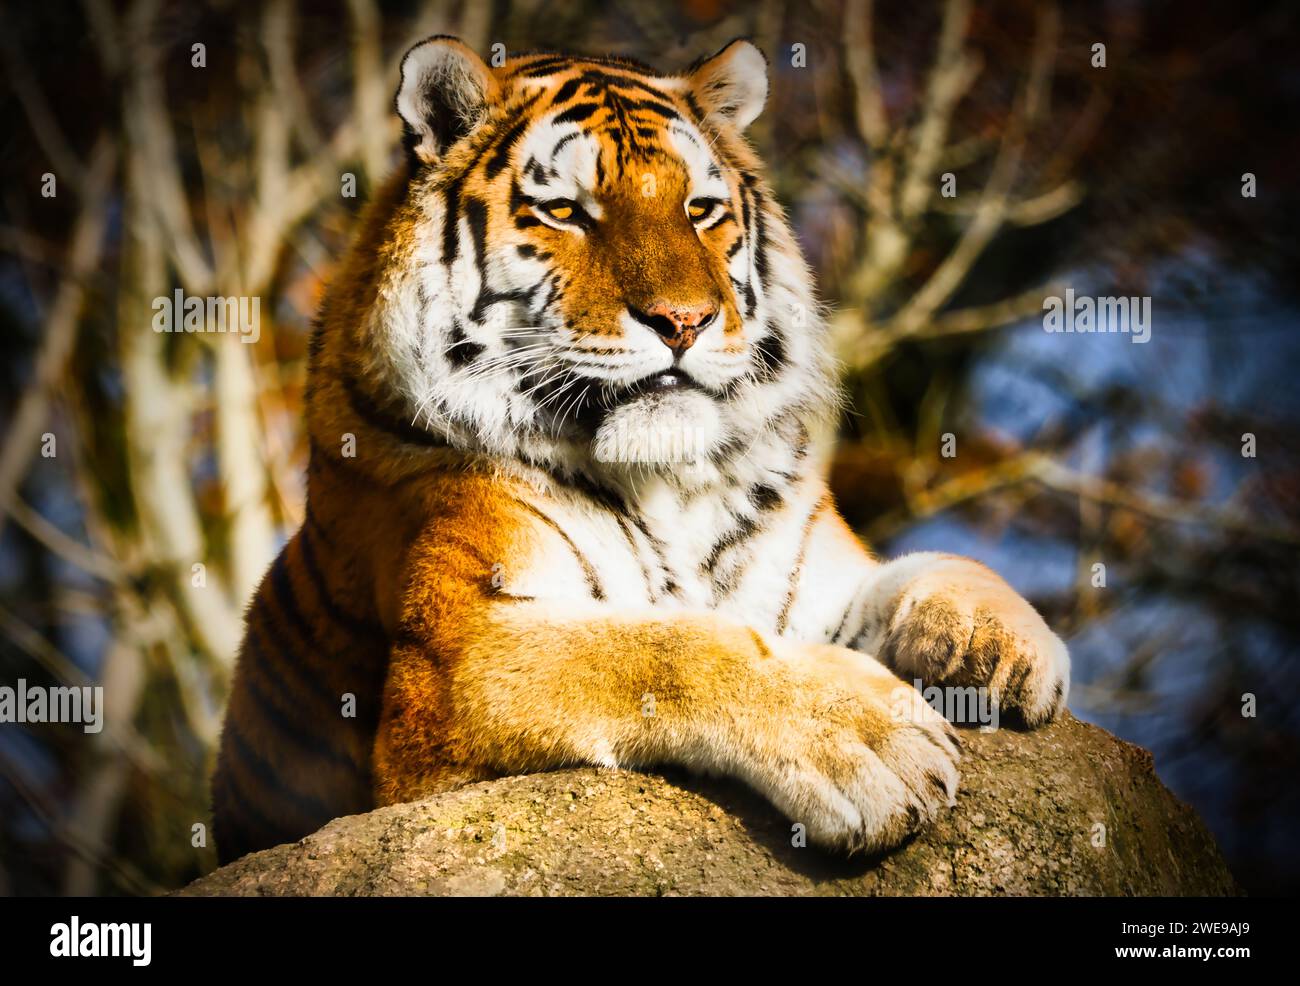 Head shot of an endangered Amur Tiger. Image taken at Dartmoor Zoo, UK. Stock Photo